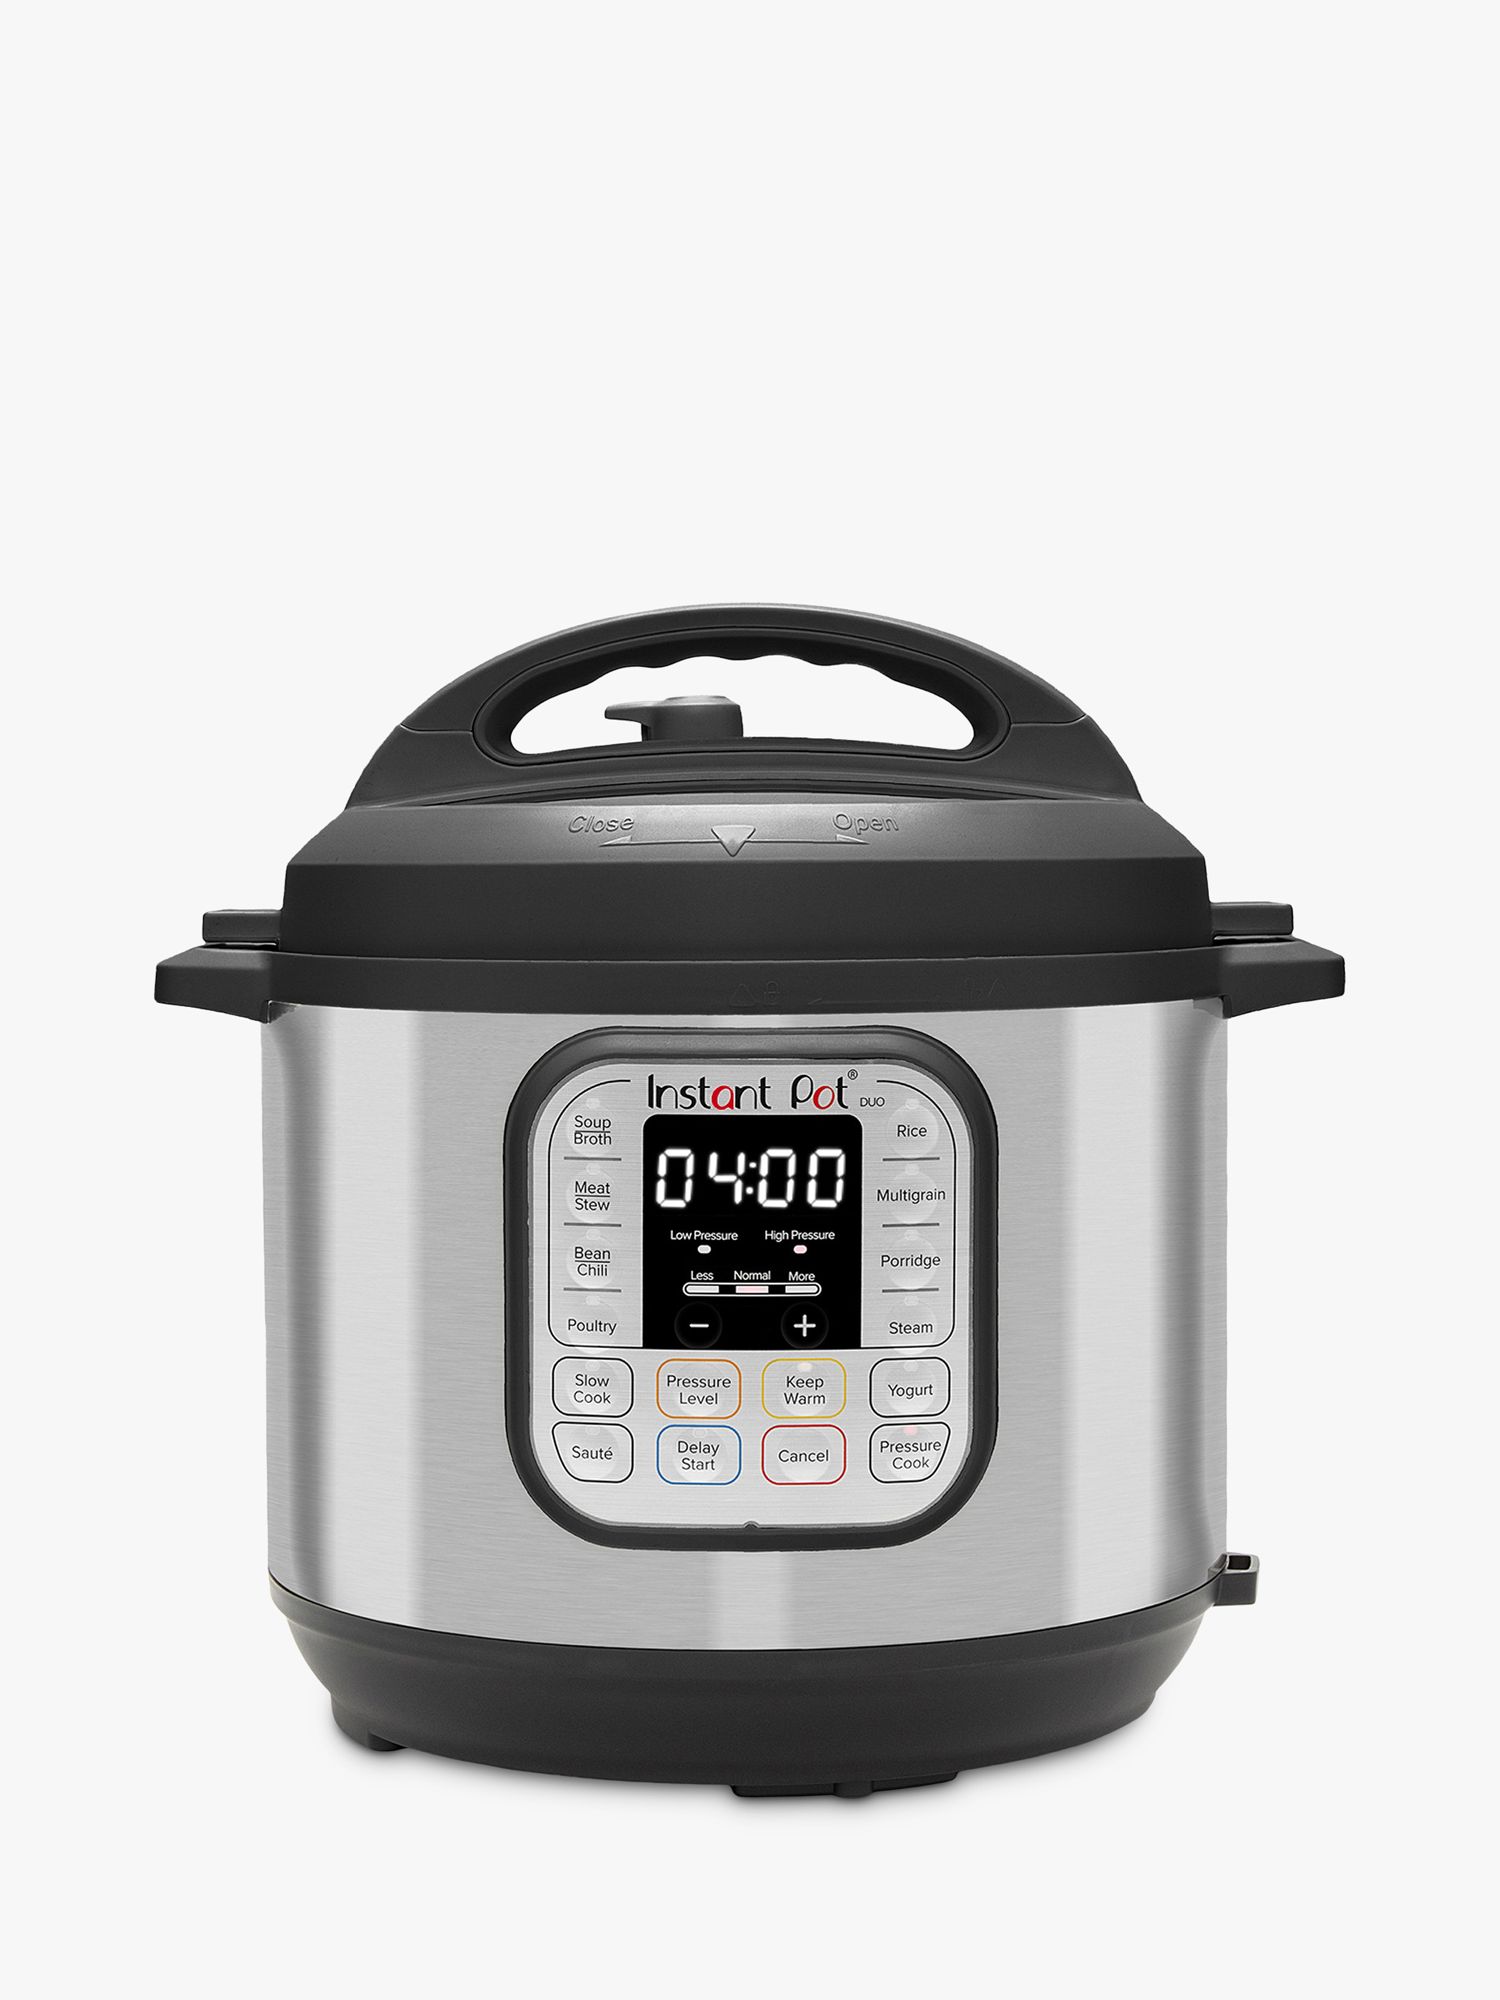 Brand New Electric Pressure Cooker Mini 4L Travel Portable Pot